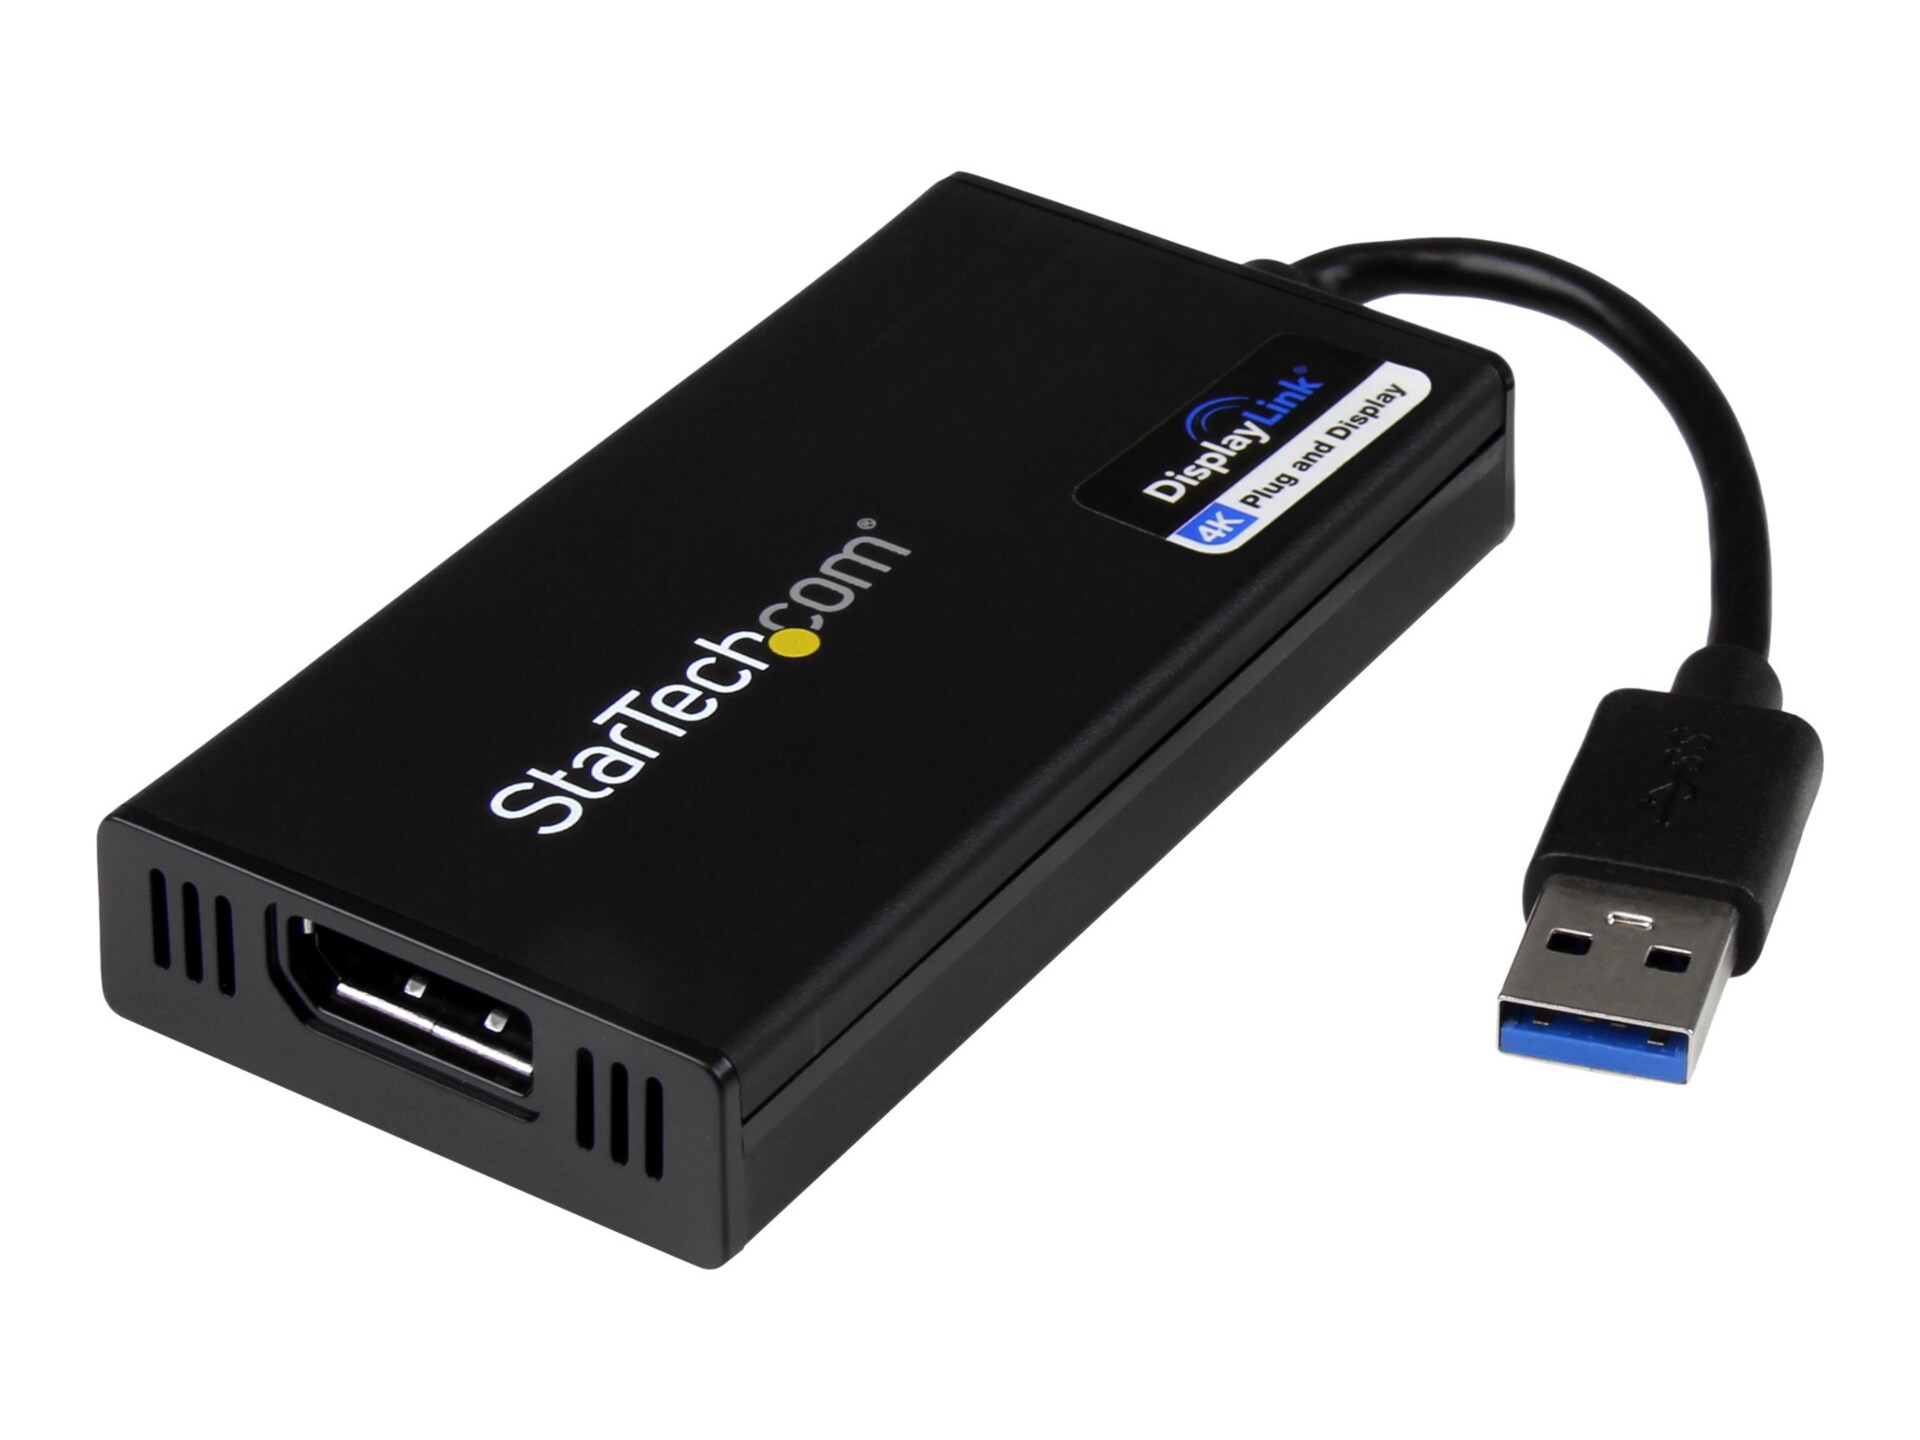 StarTech.com USB 3.0 to DisplayPort Adapter 4K 30Hz External Graphics Card